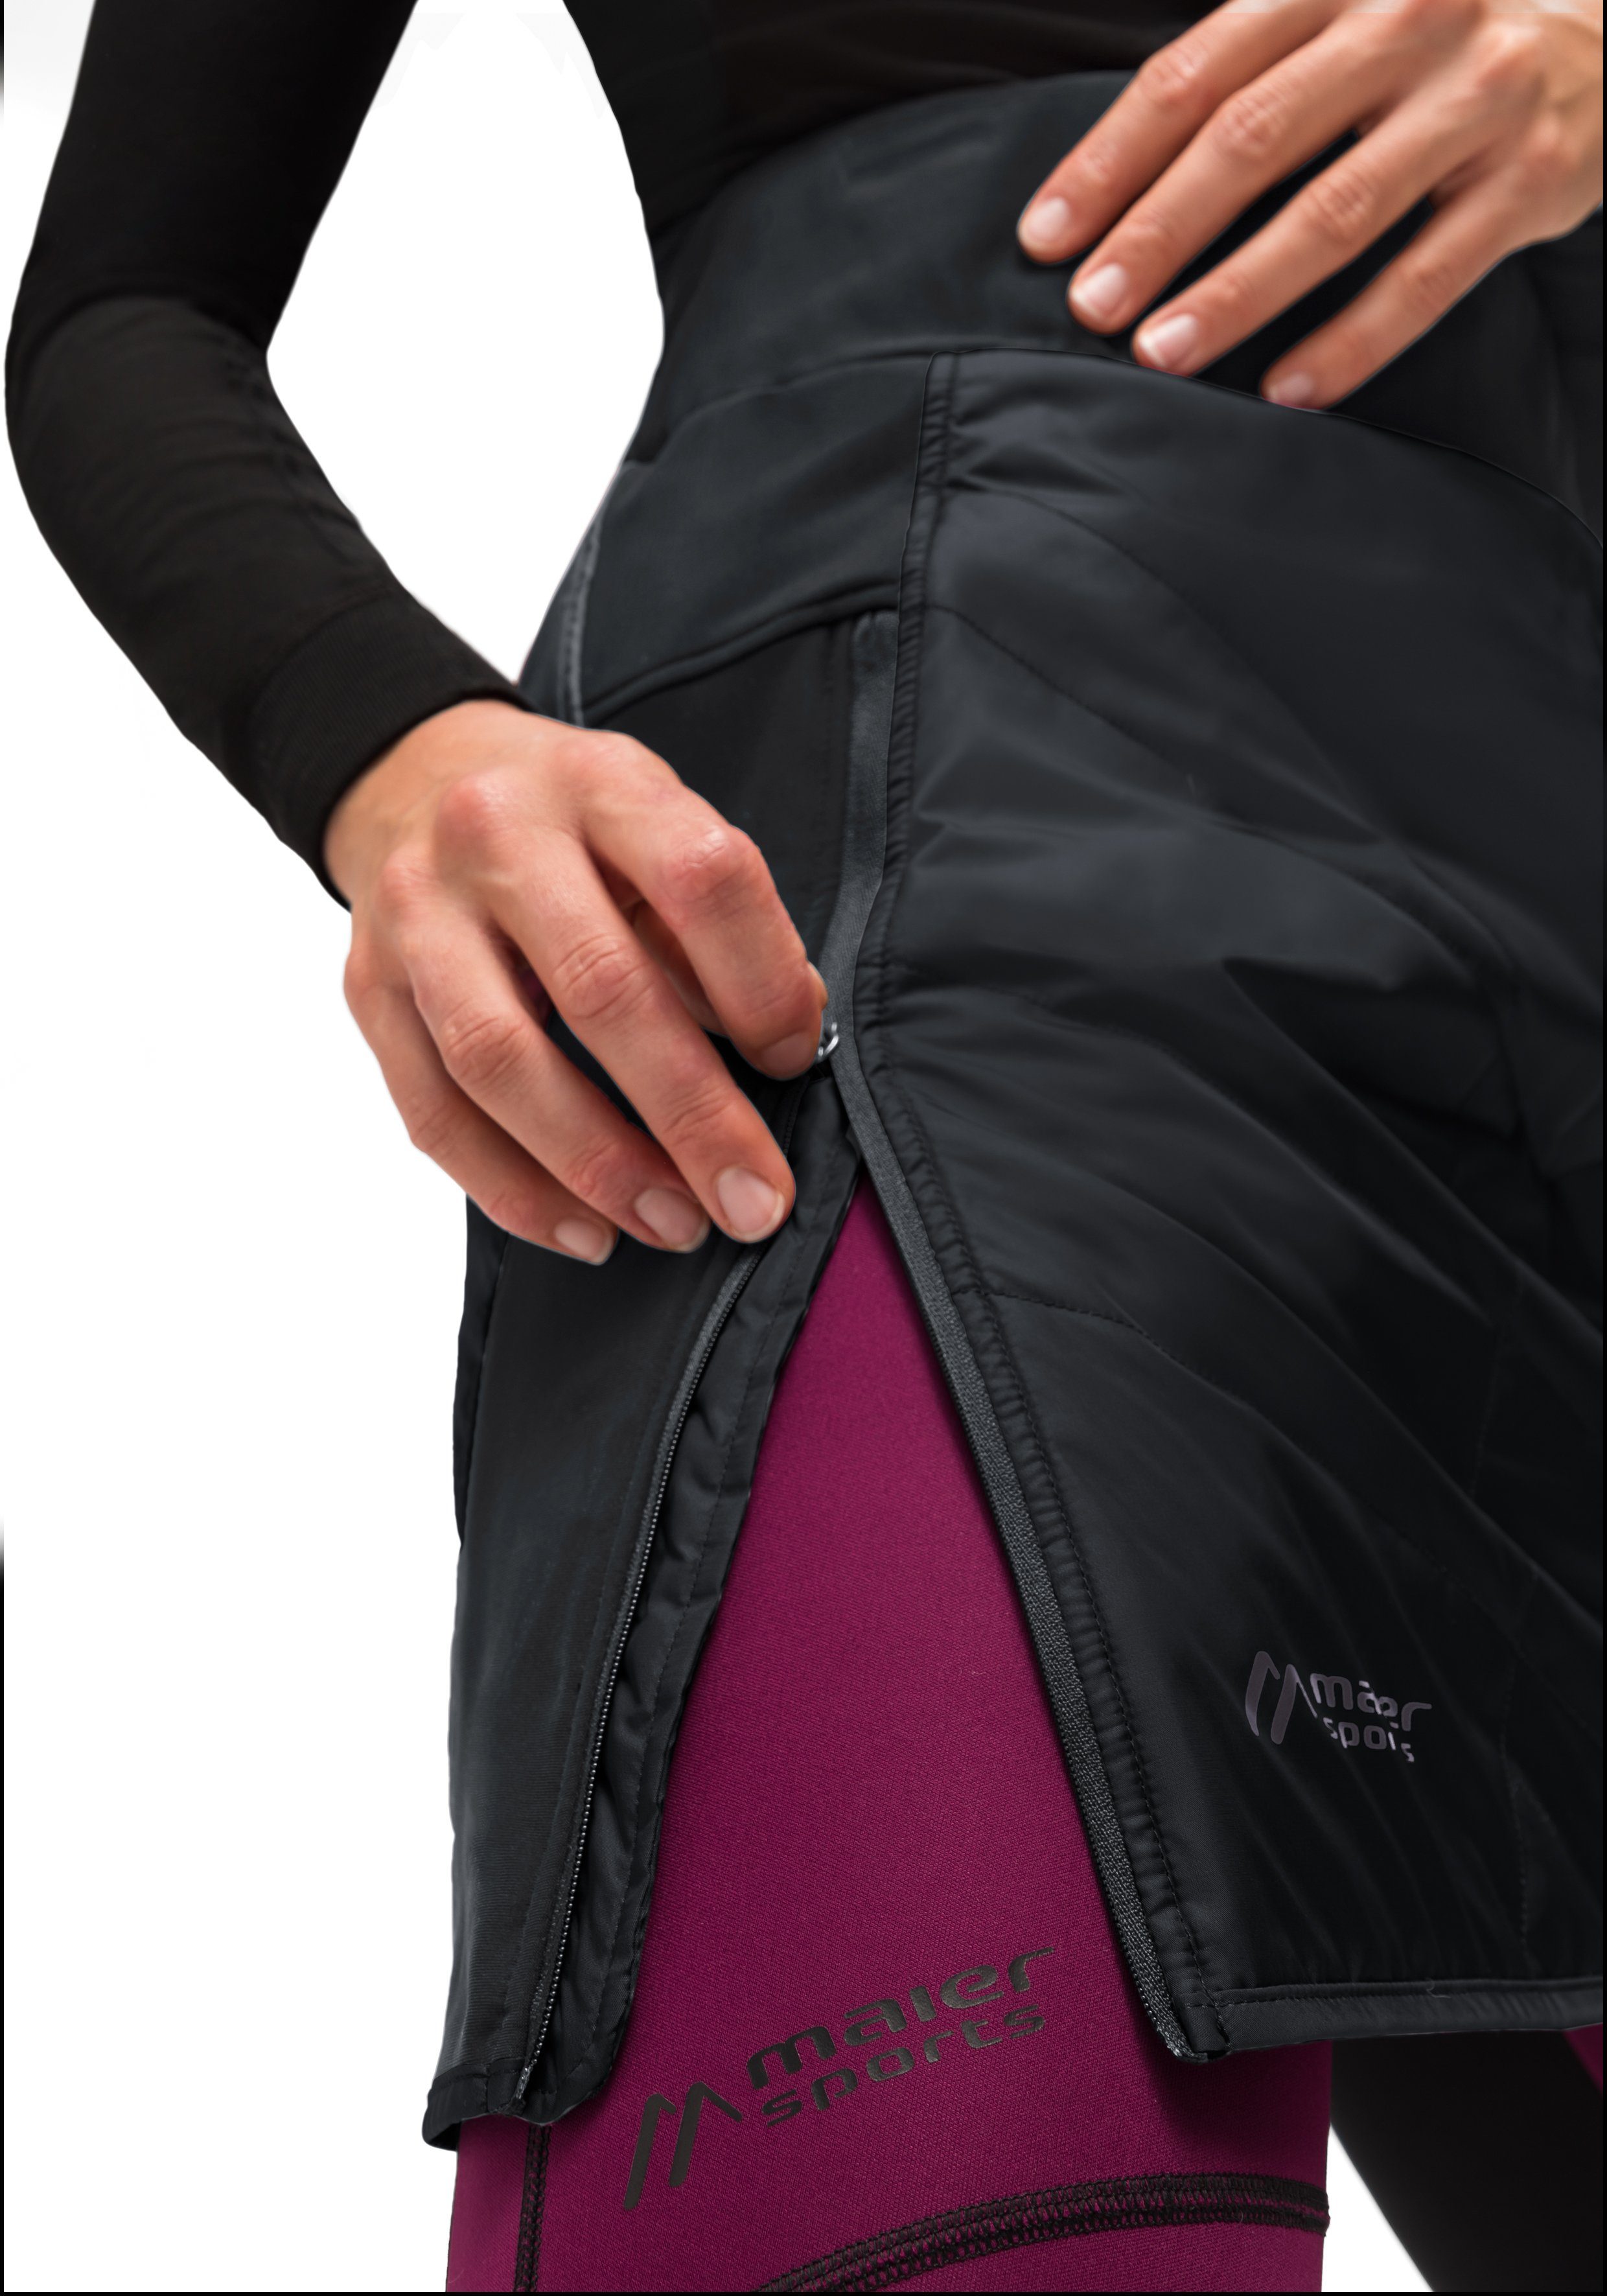 Maier Sports Sweatrock Skjoma Bund Skirt W elastischer Überrock, atmungsaktiv schwarz windabweisend, und Damen